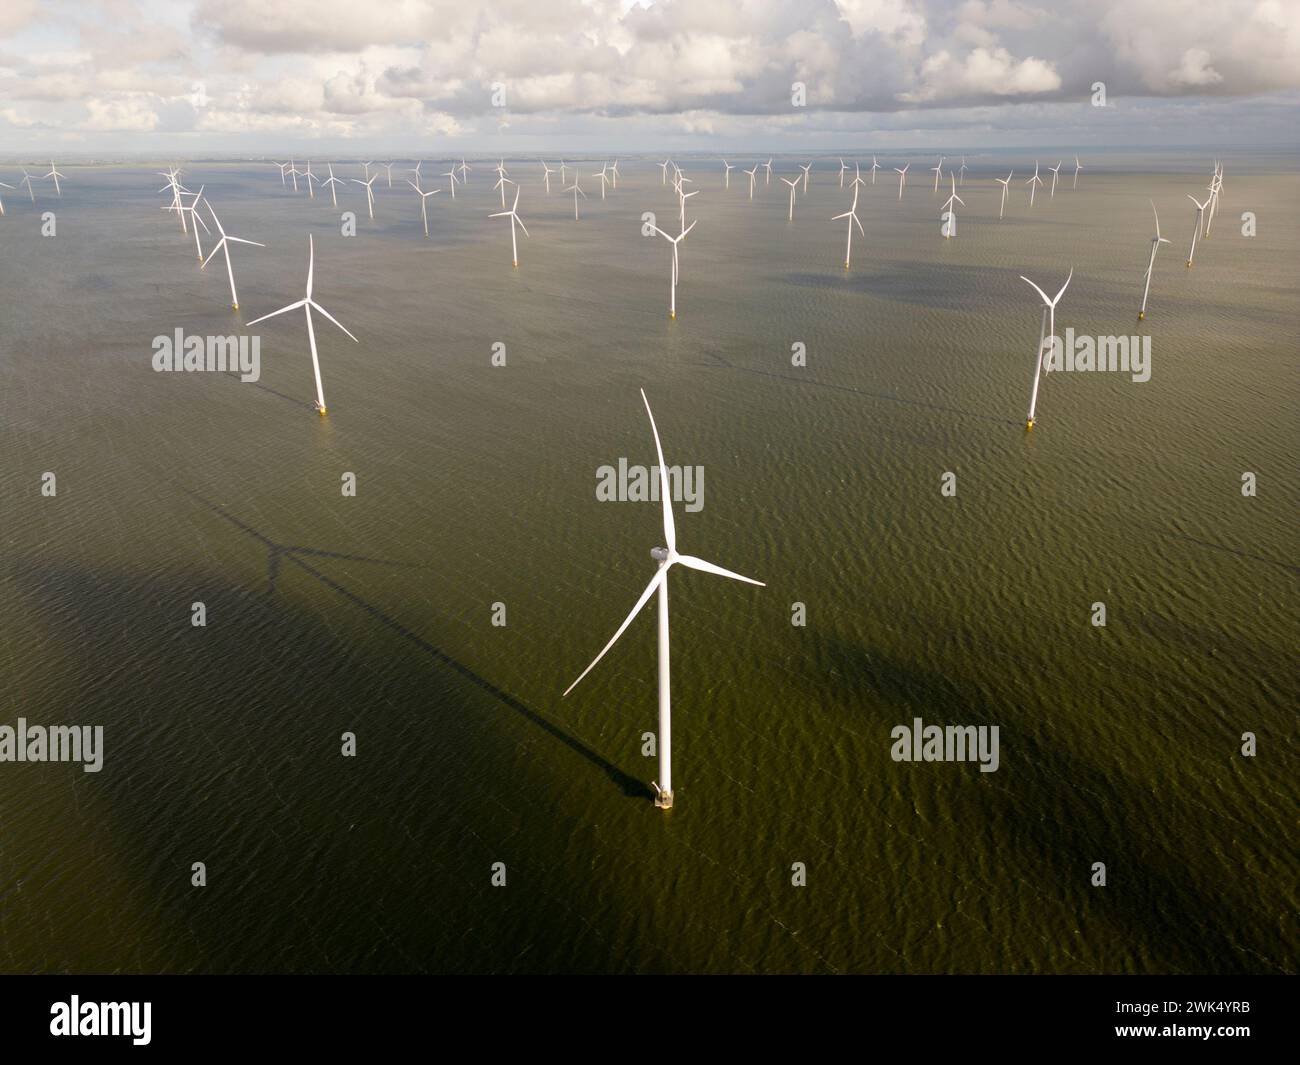 Windturbines in an offshore windpark, Ijsselmeer, Breezanddijk, The Netherlands Stock Photo